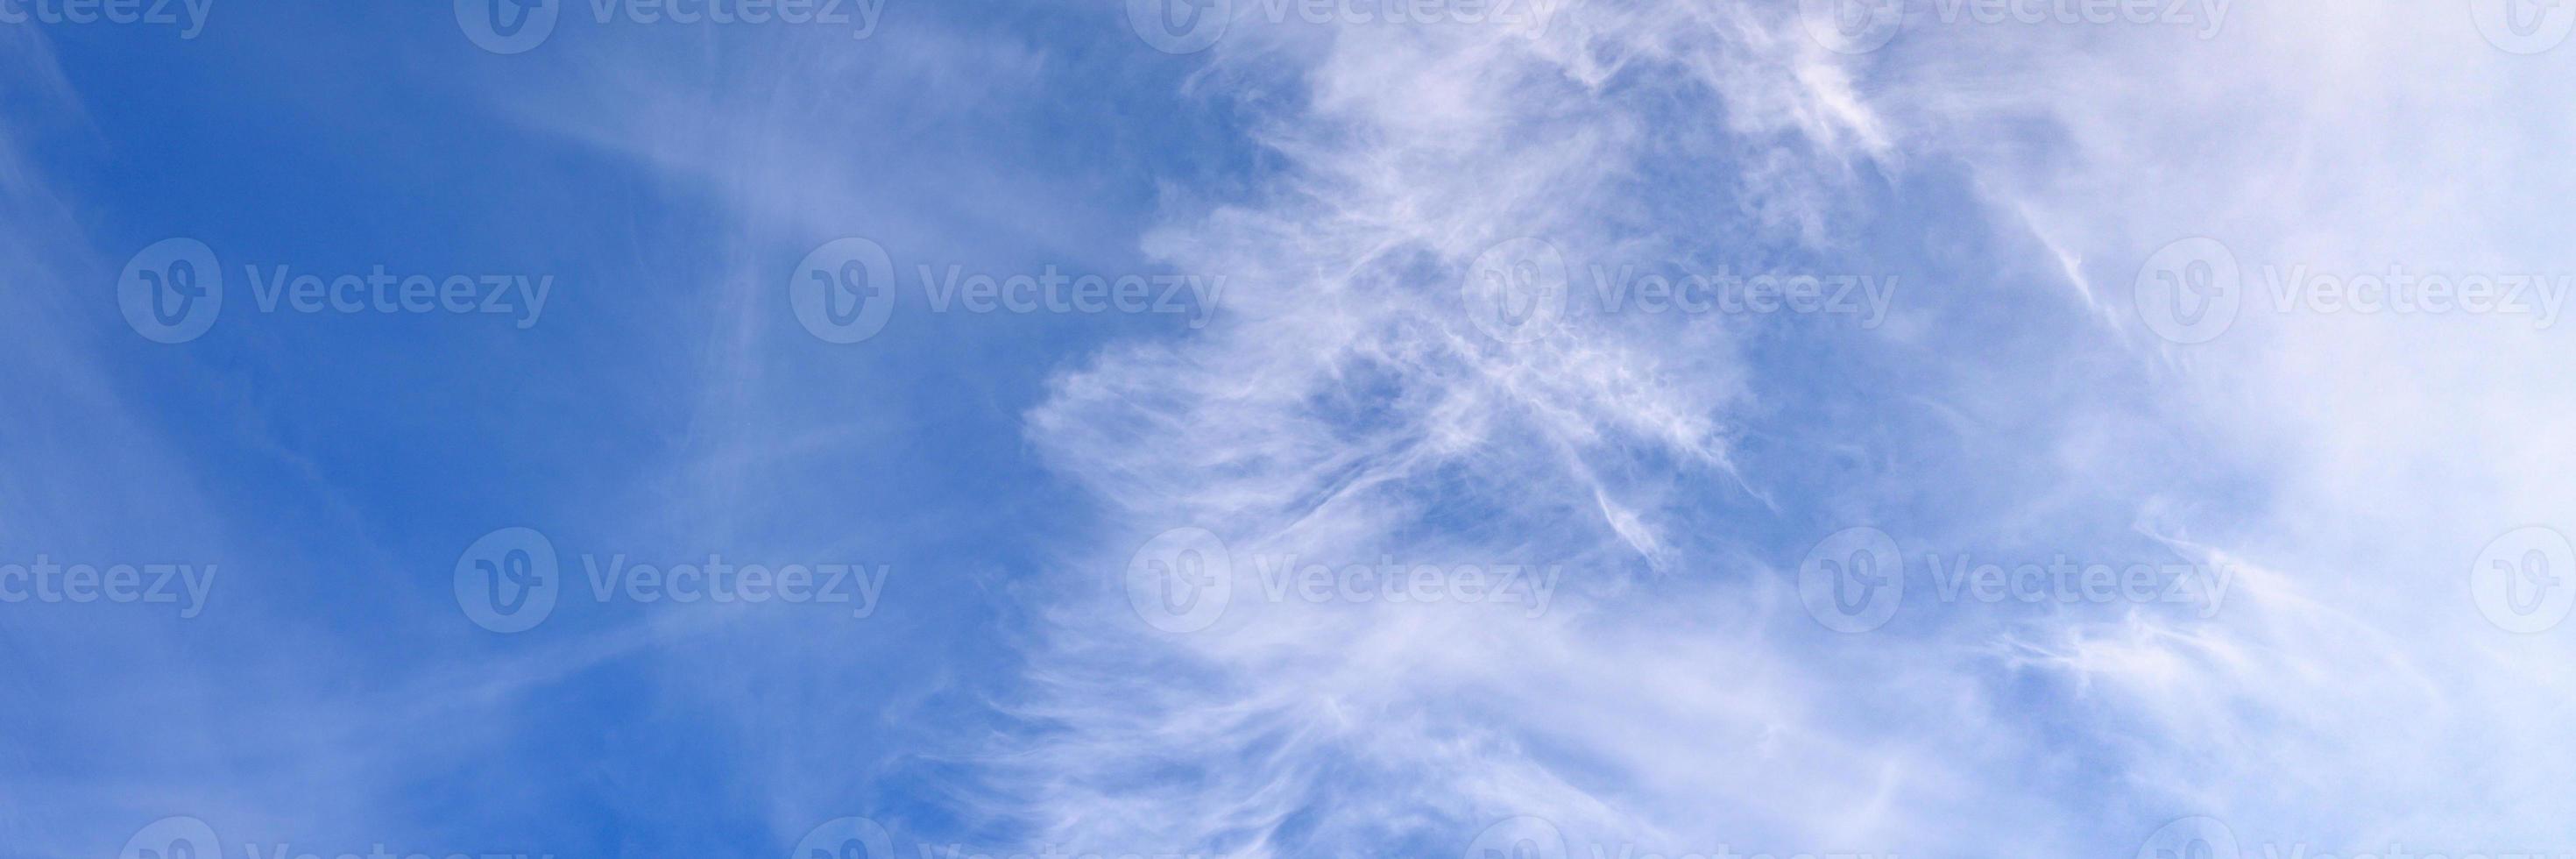 vackra blå himmelmoln foto